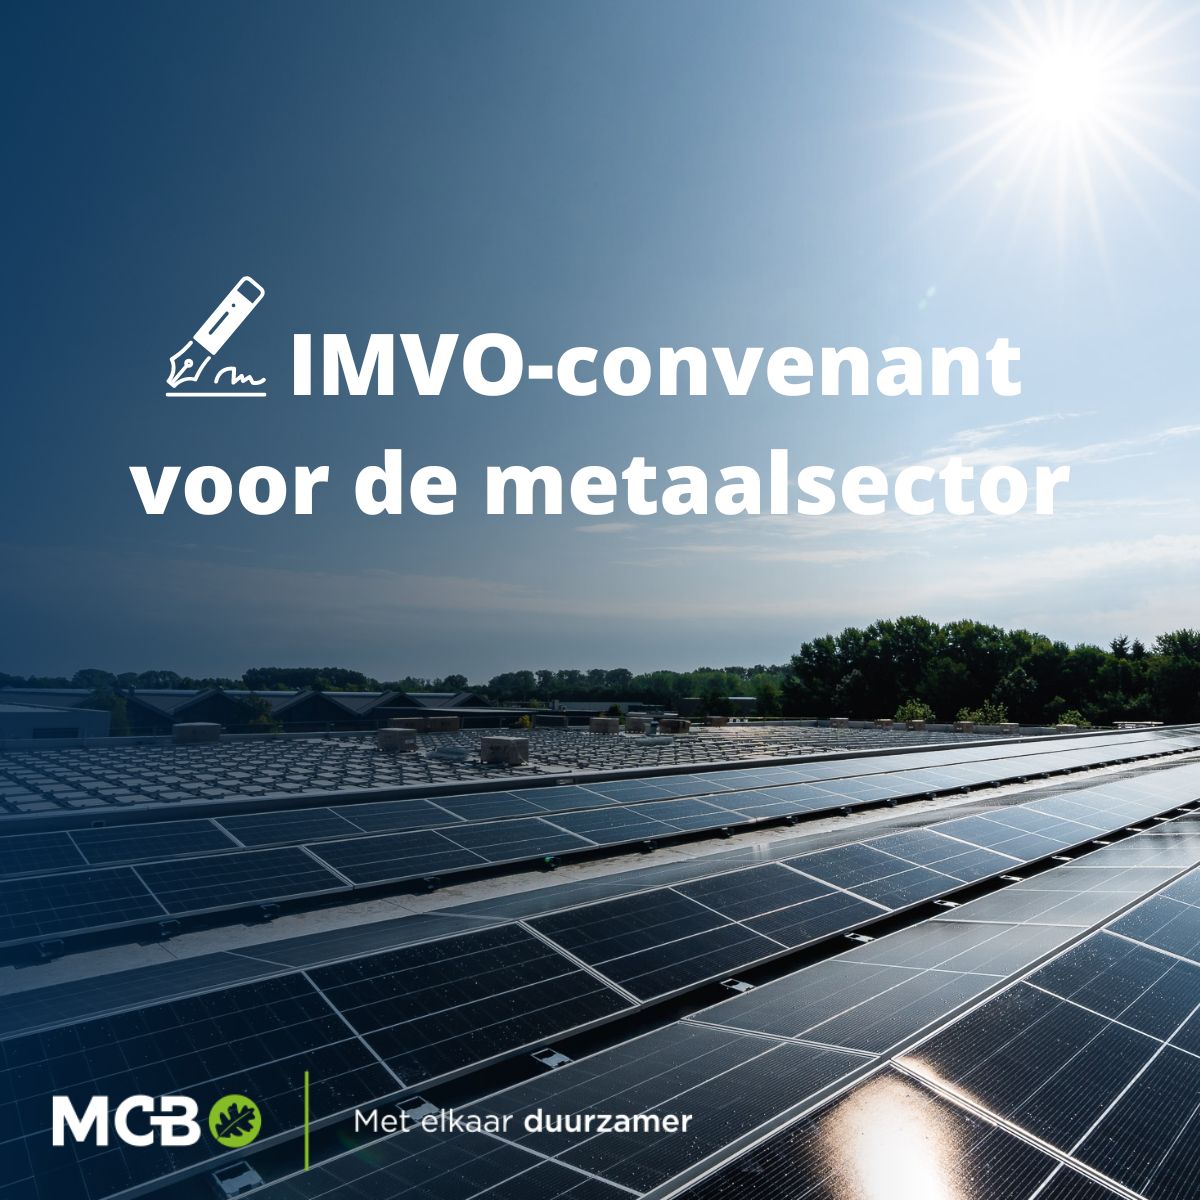 MCB ondertekent IMVO-convenant voor de Metaalsector